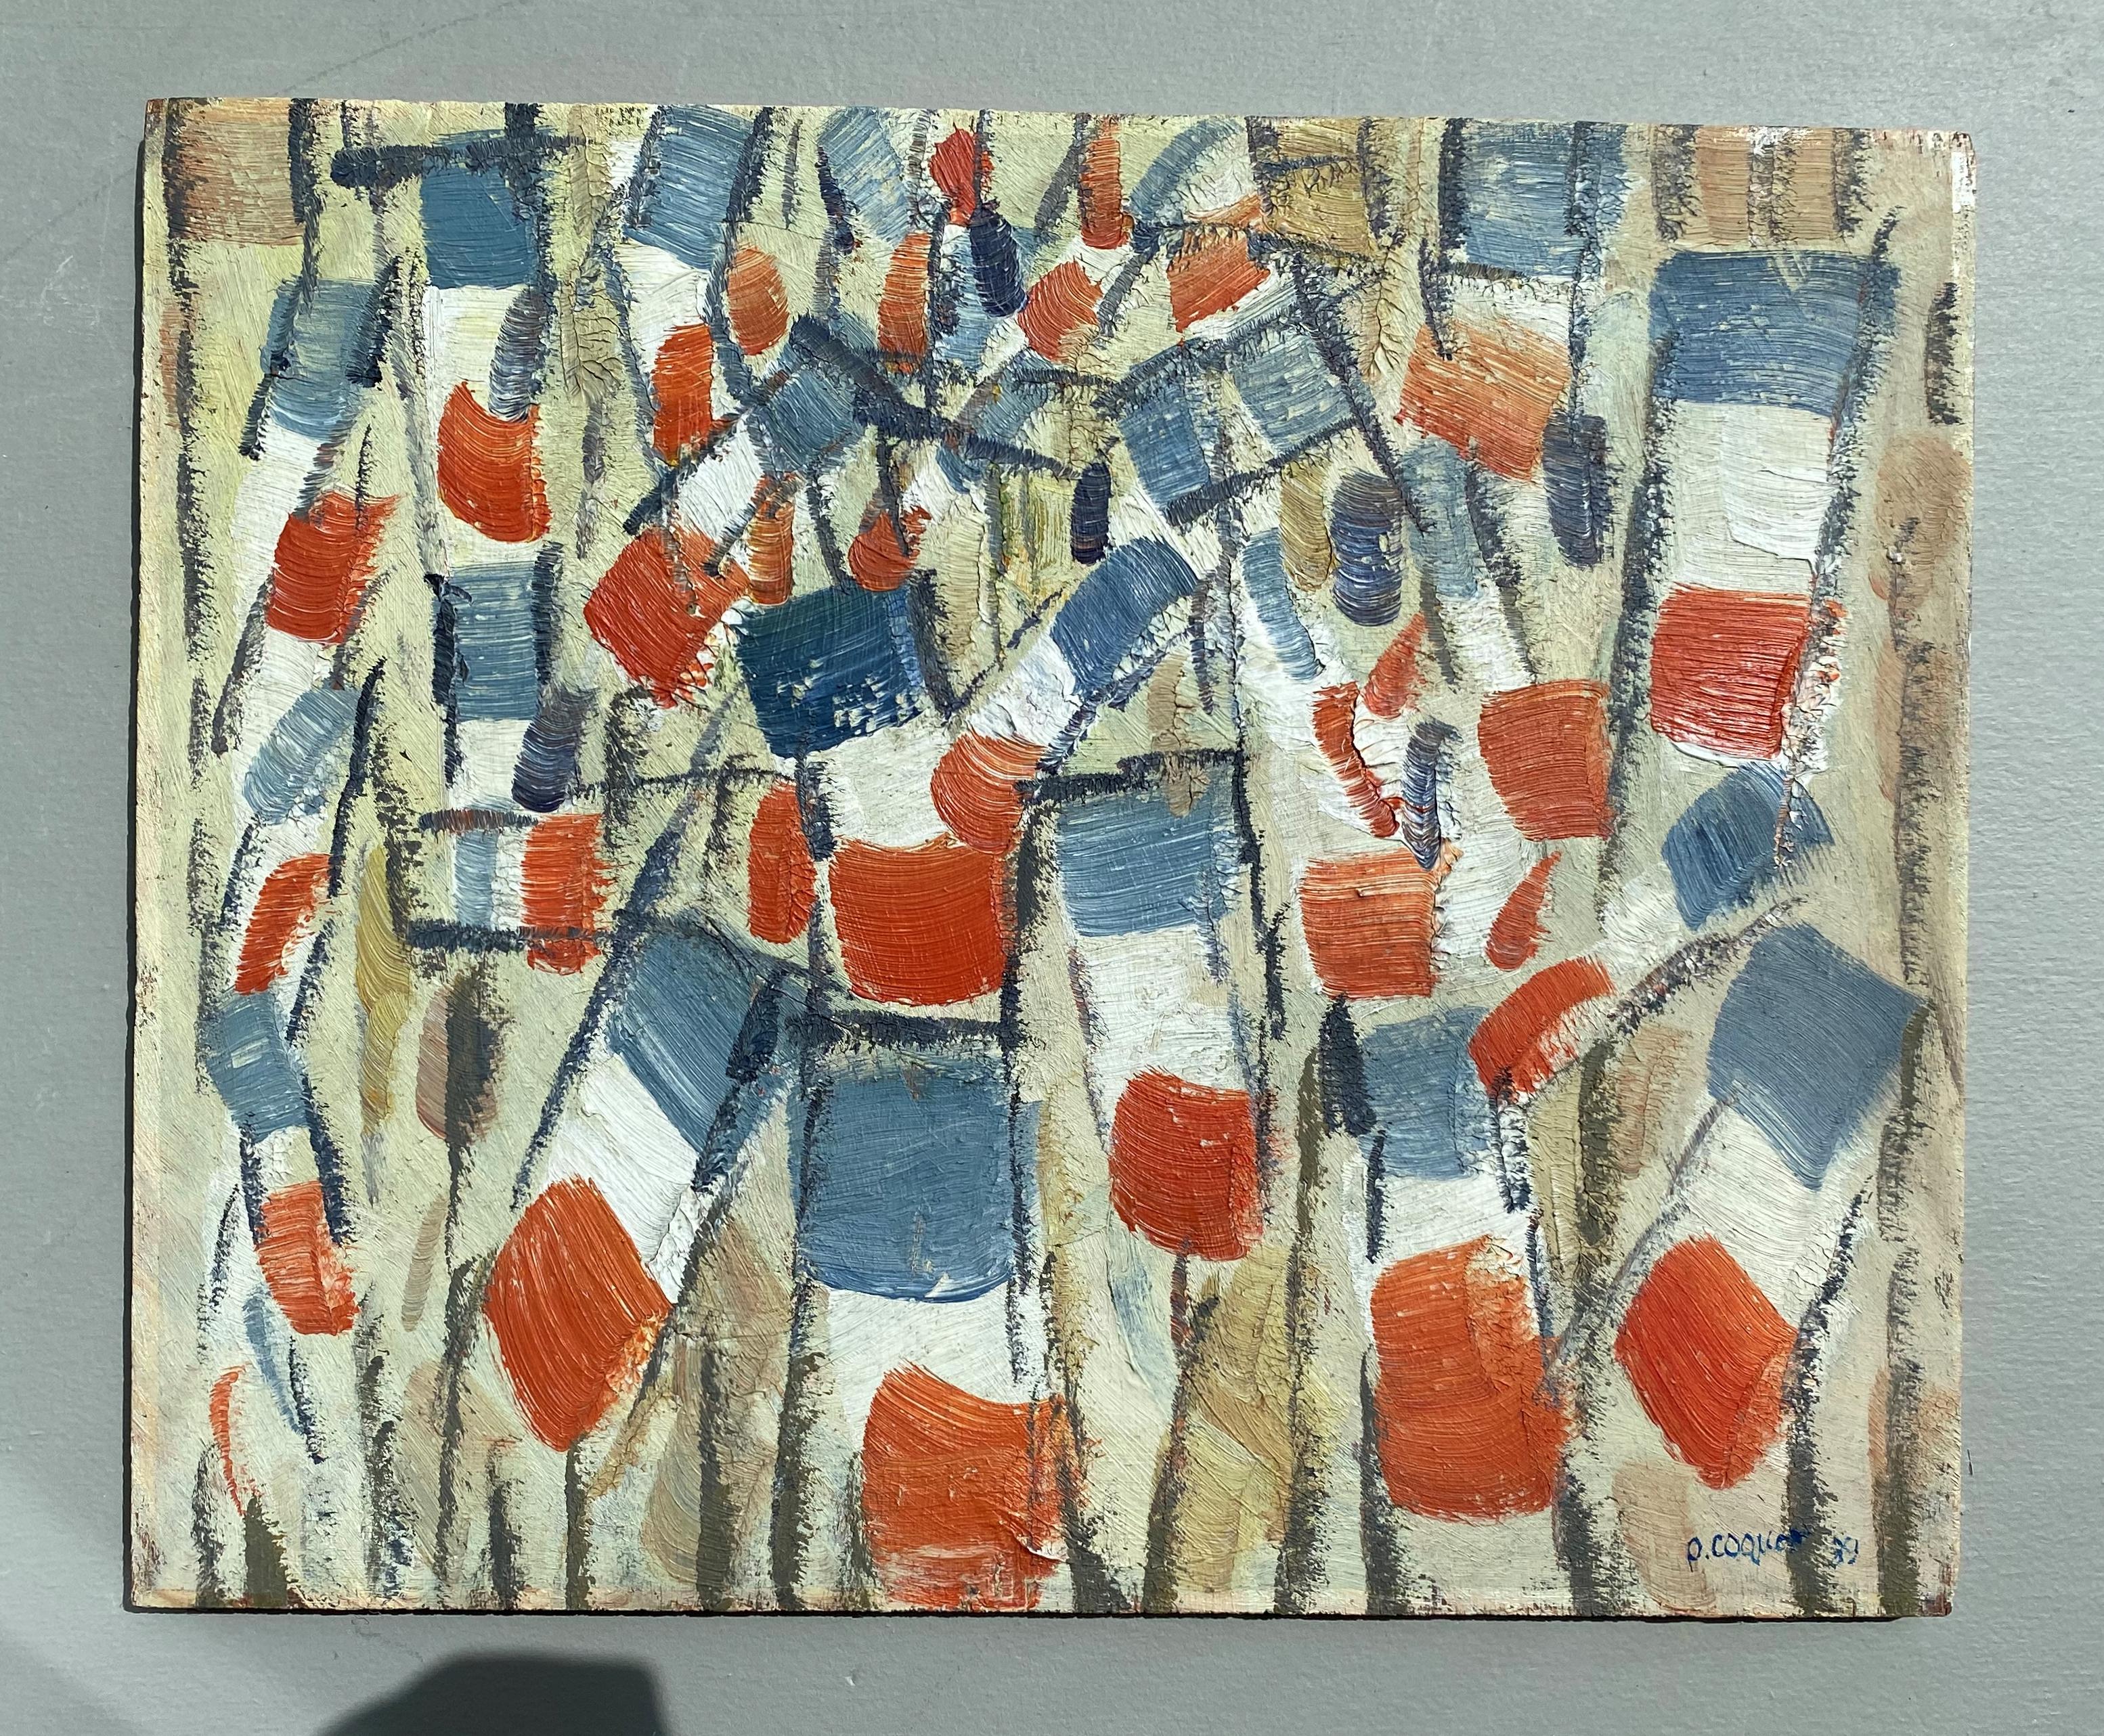 Franais-/französische Flaggen aus Segeltuch – Painting von Pierre Coquet